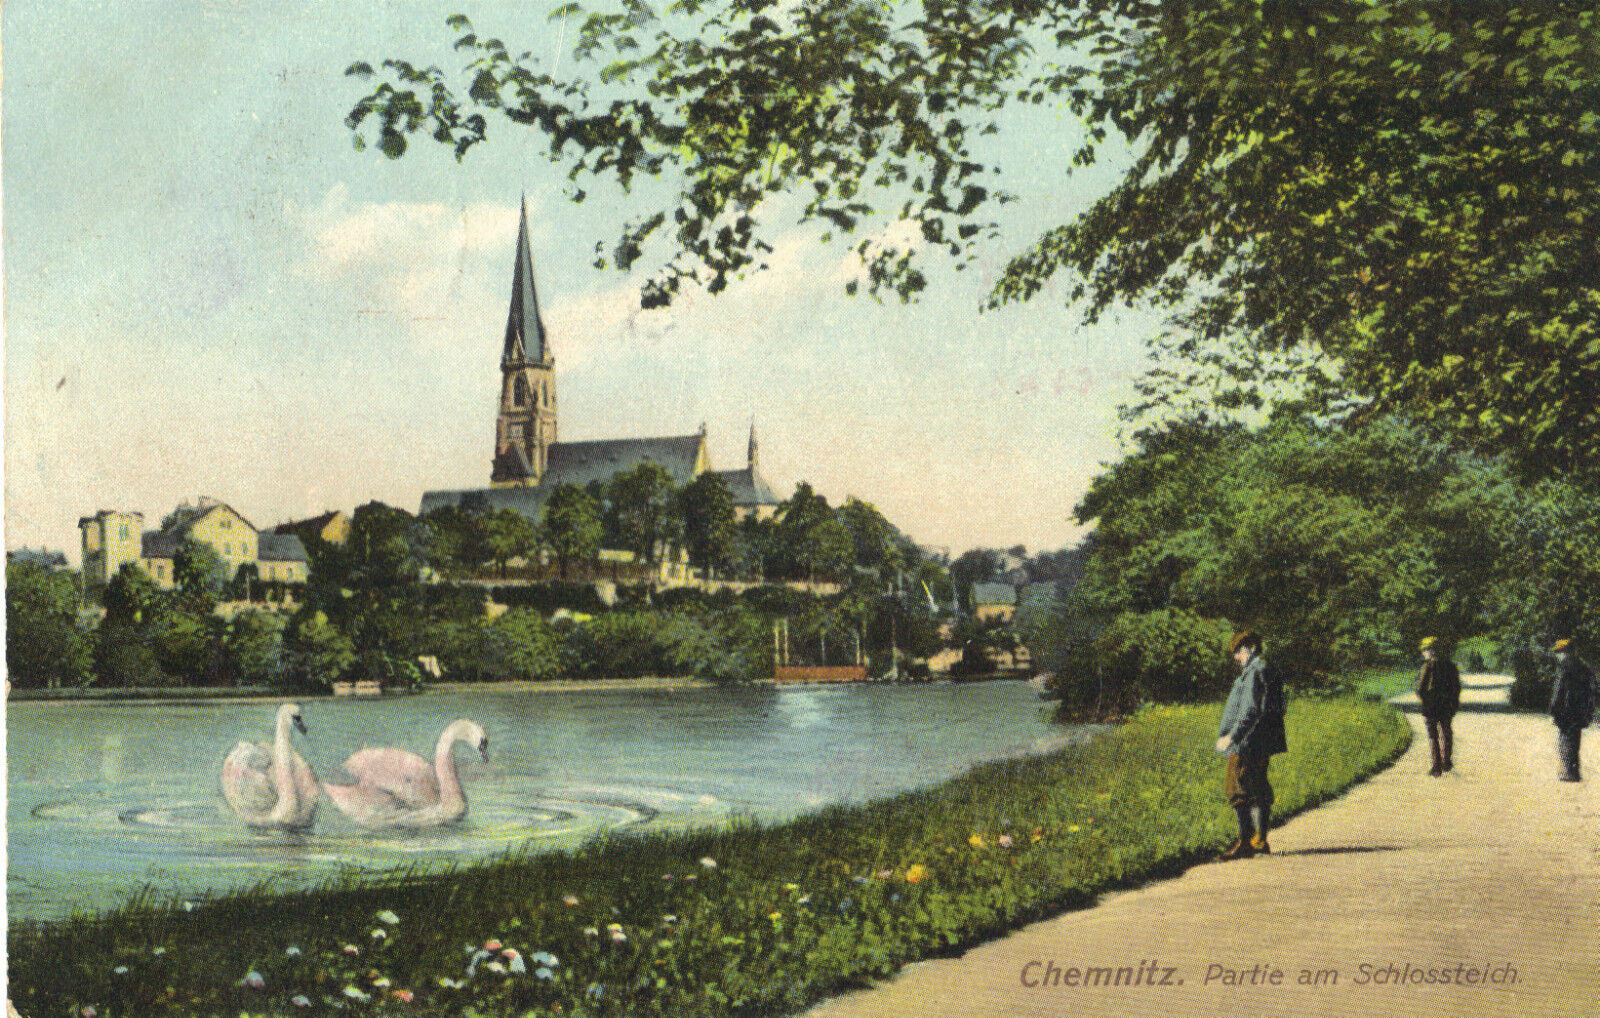 Chemnitz, Partie am Schloßteich, alte Ansichtskarte von 1908